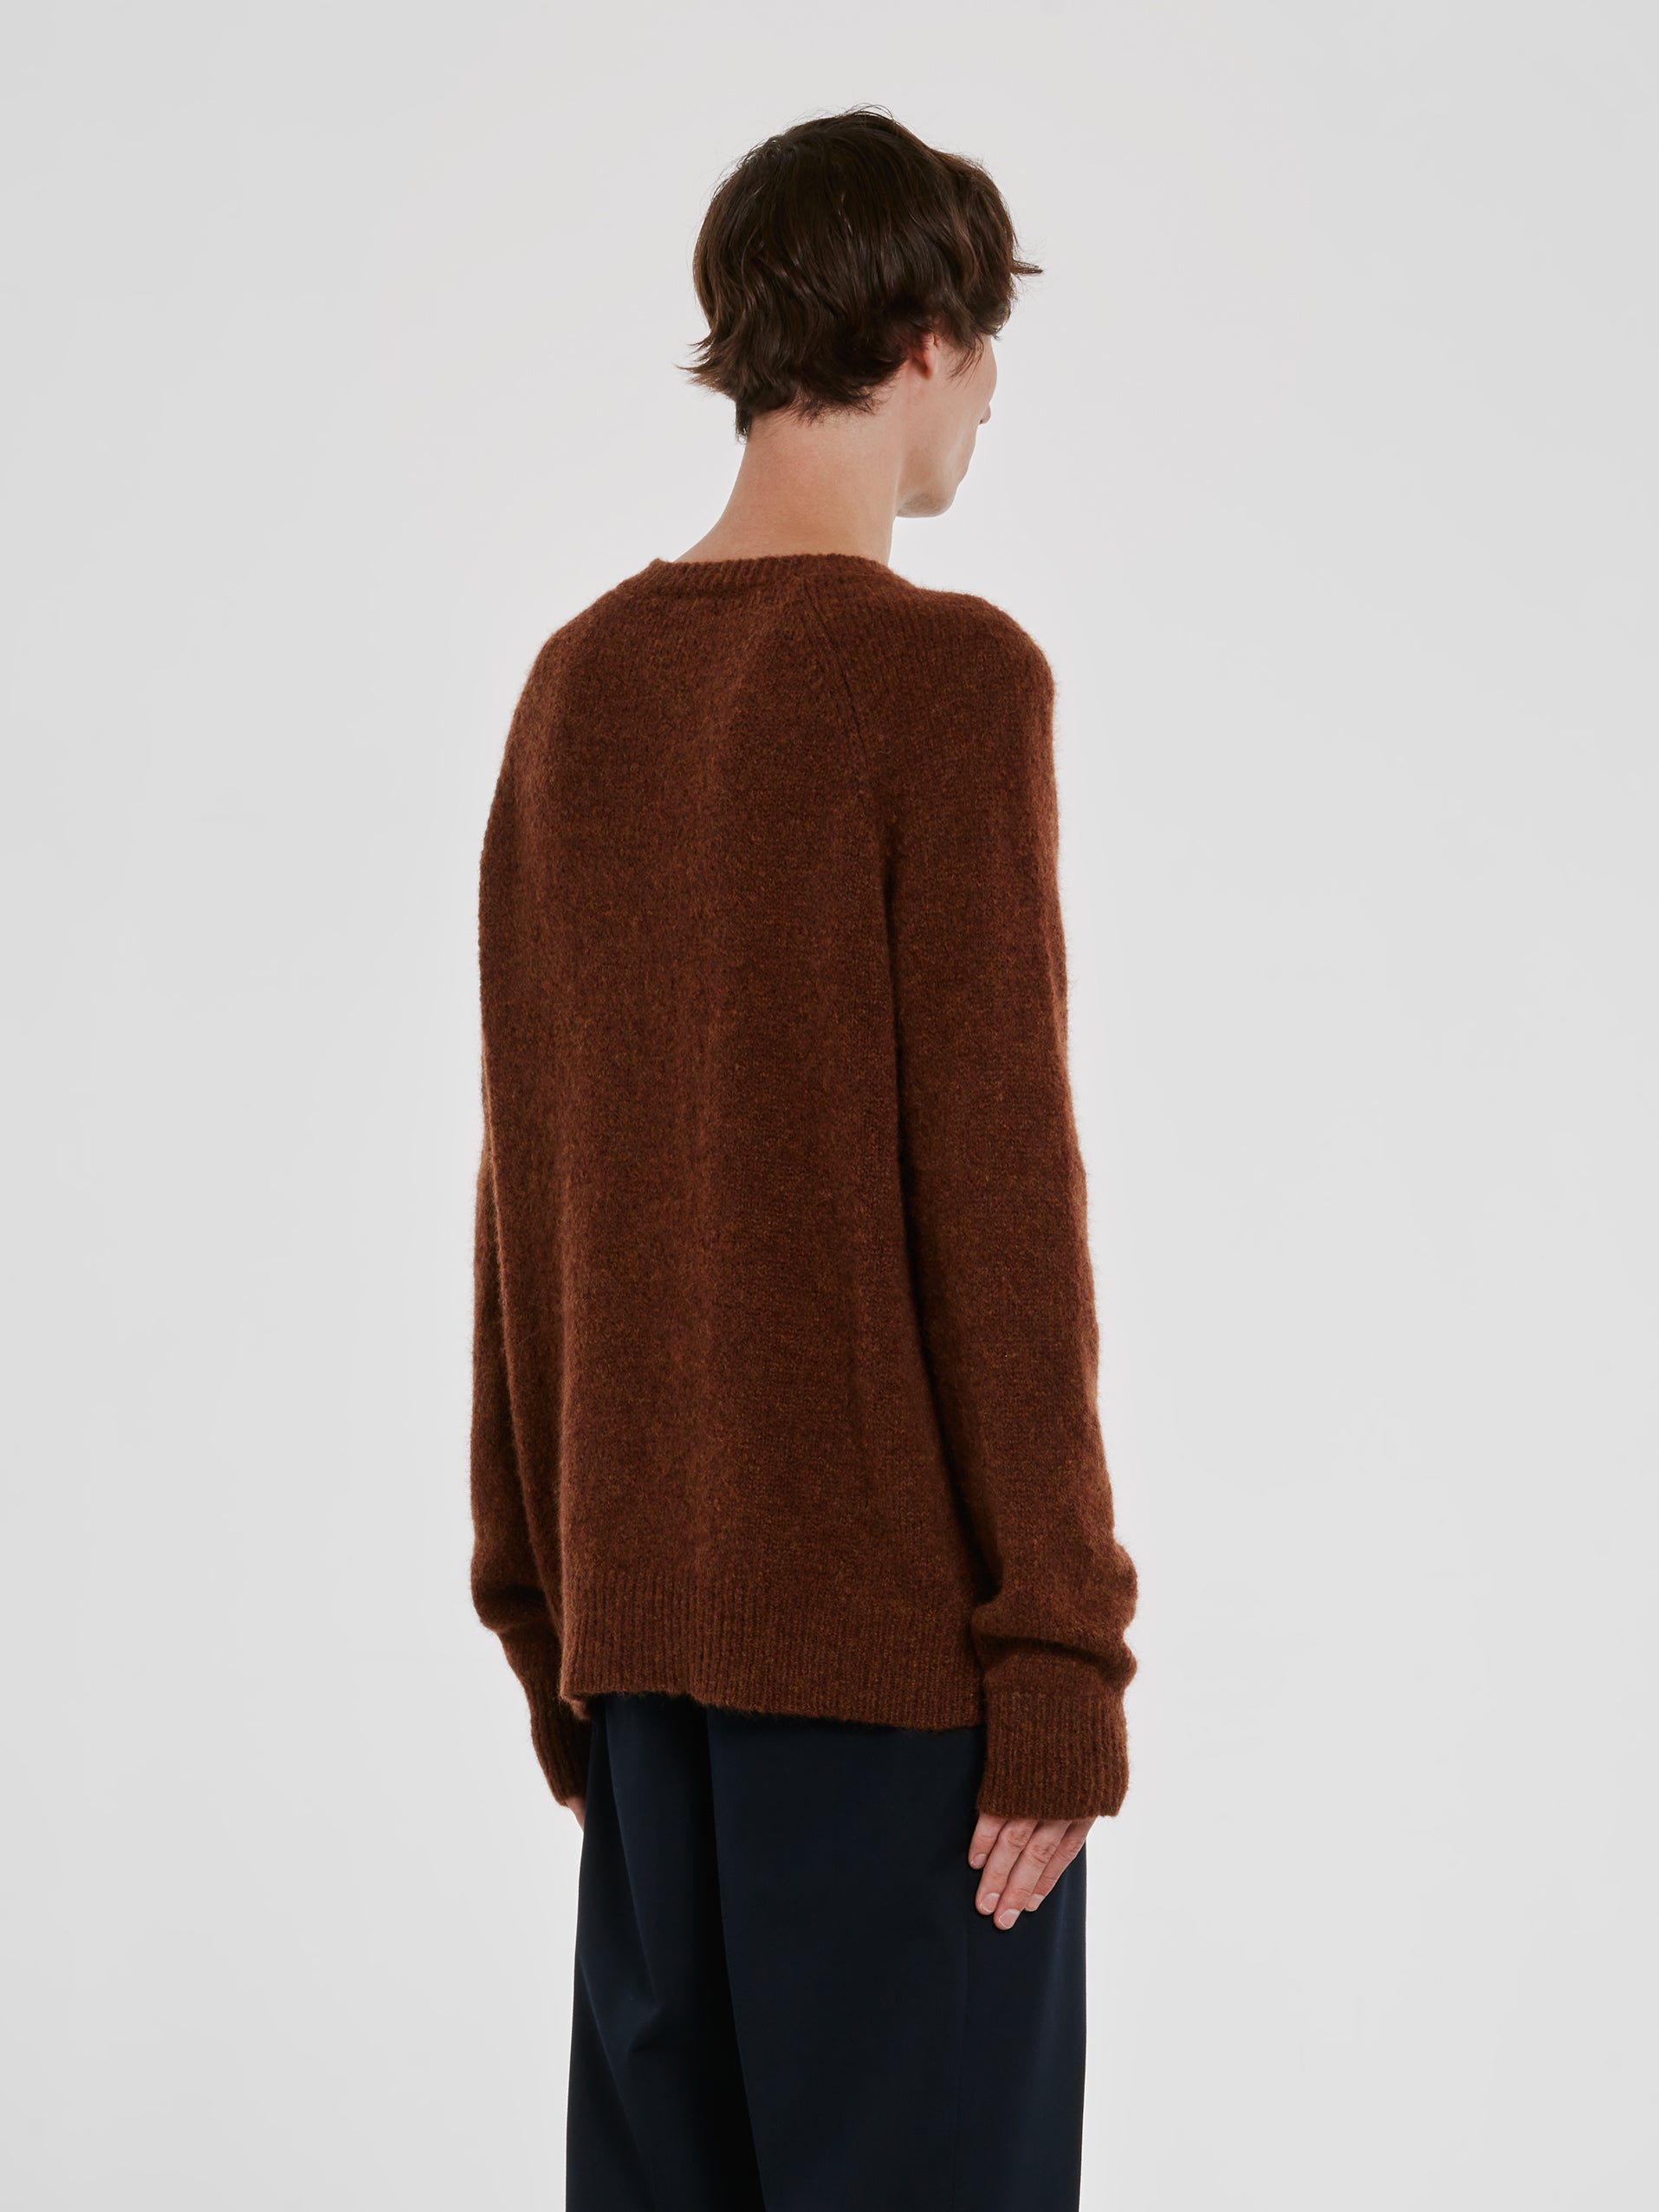 Dries Van Noten - Men’s Wool Sweater - (Brown) view 4